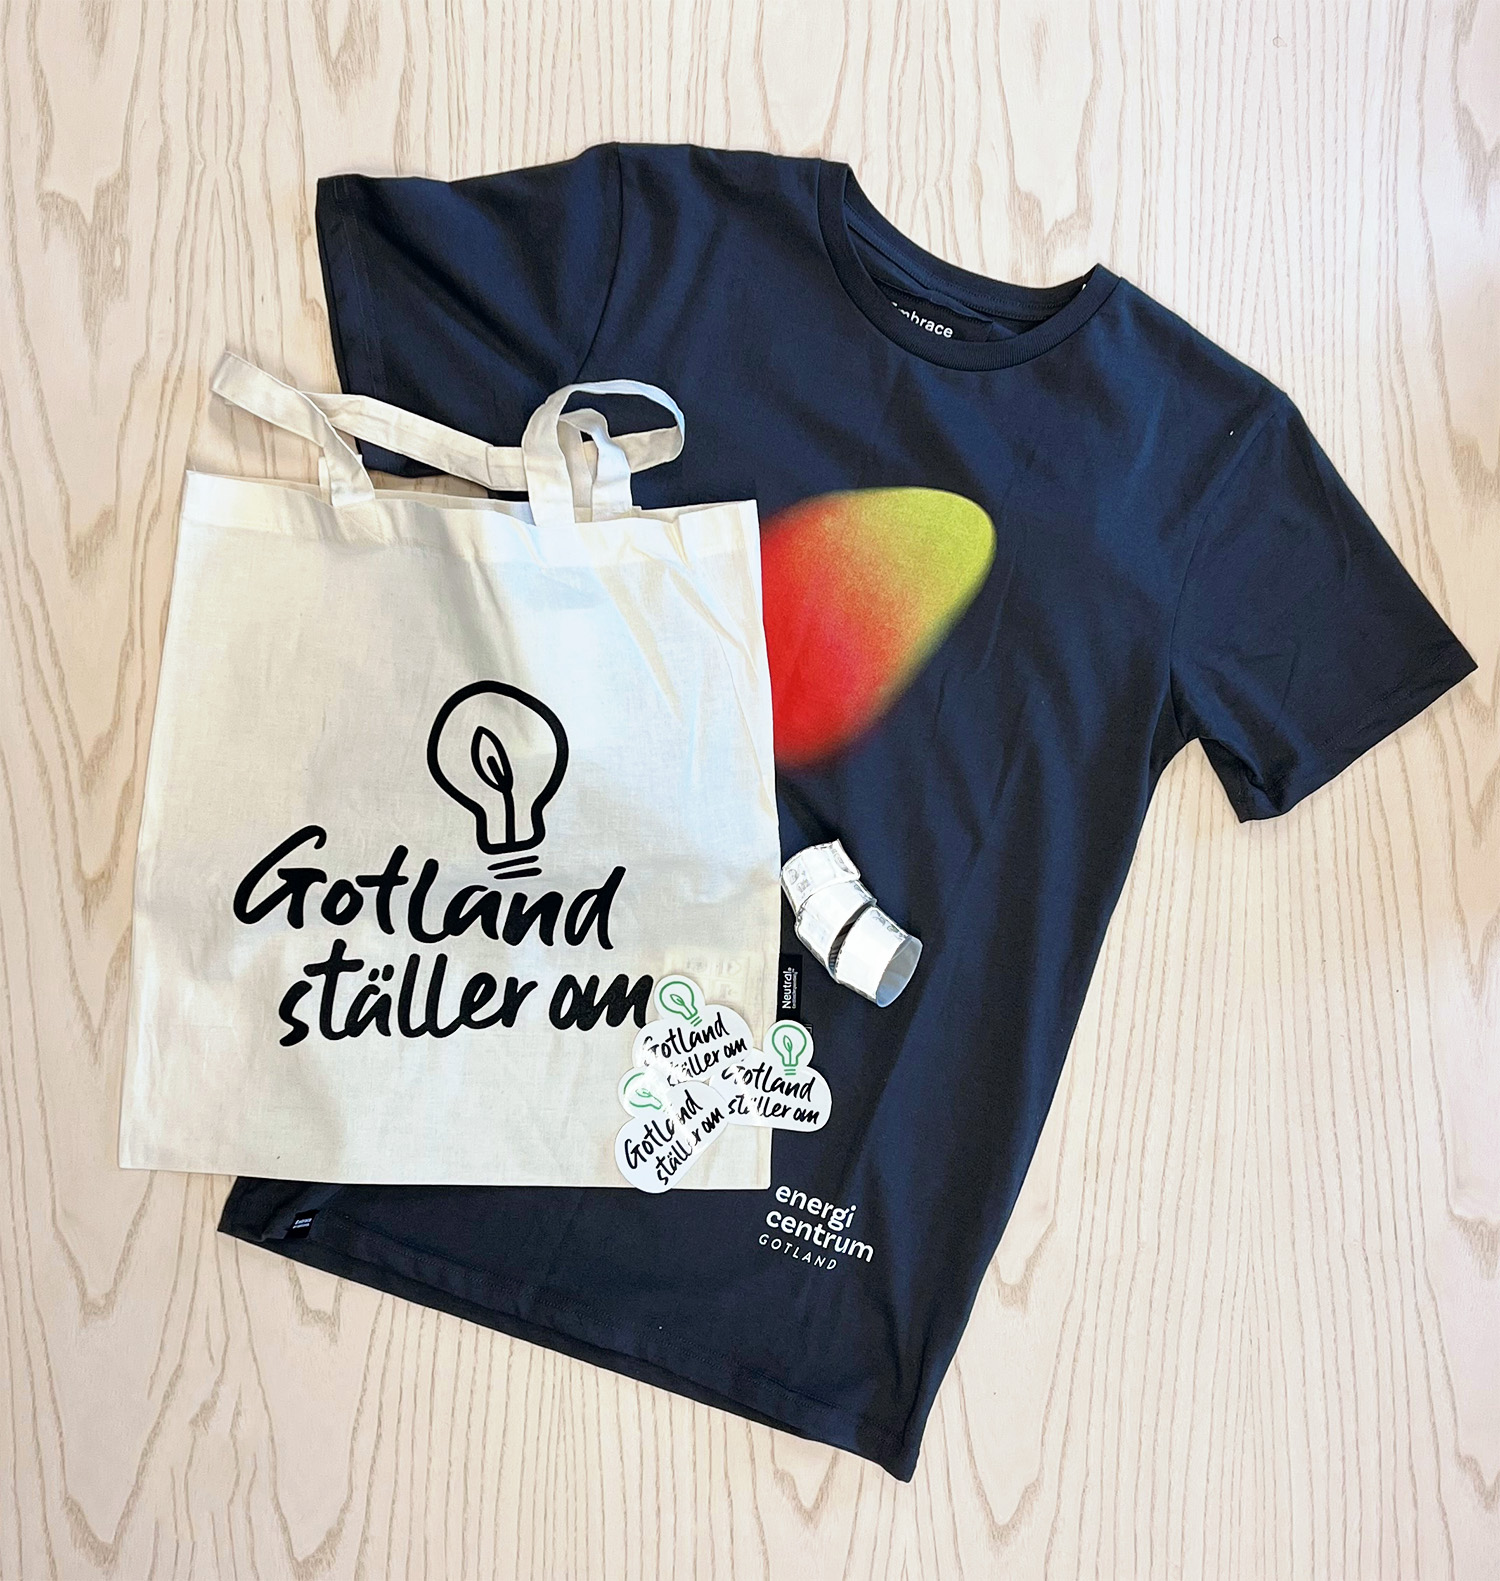 Vinstkit bestående av Gotland ställer om-väska, T-shirt, klistermärken och reflexer.